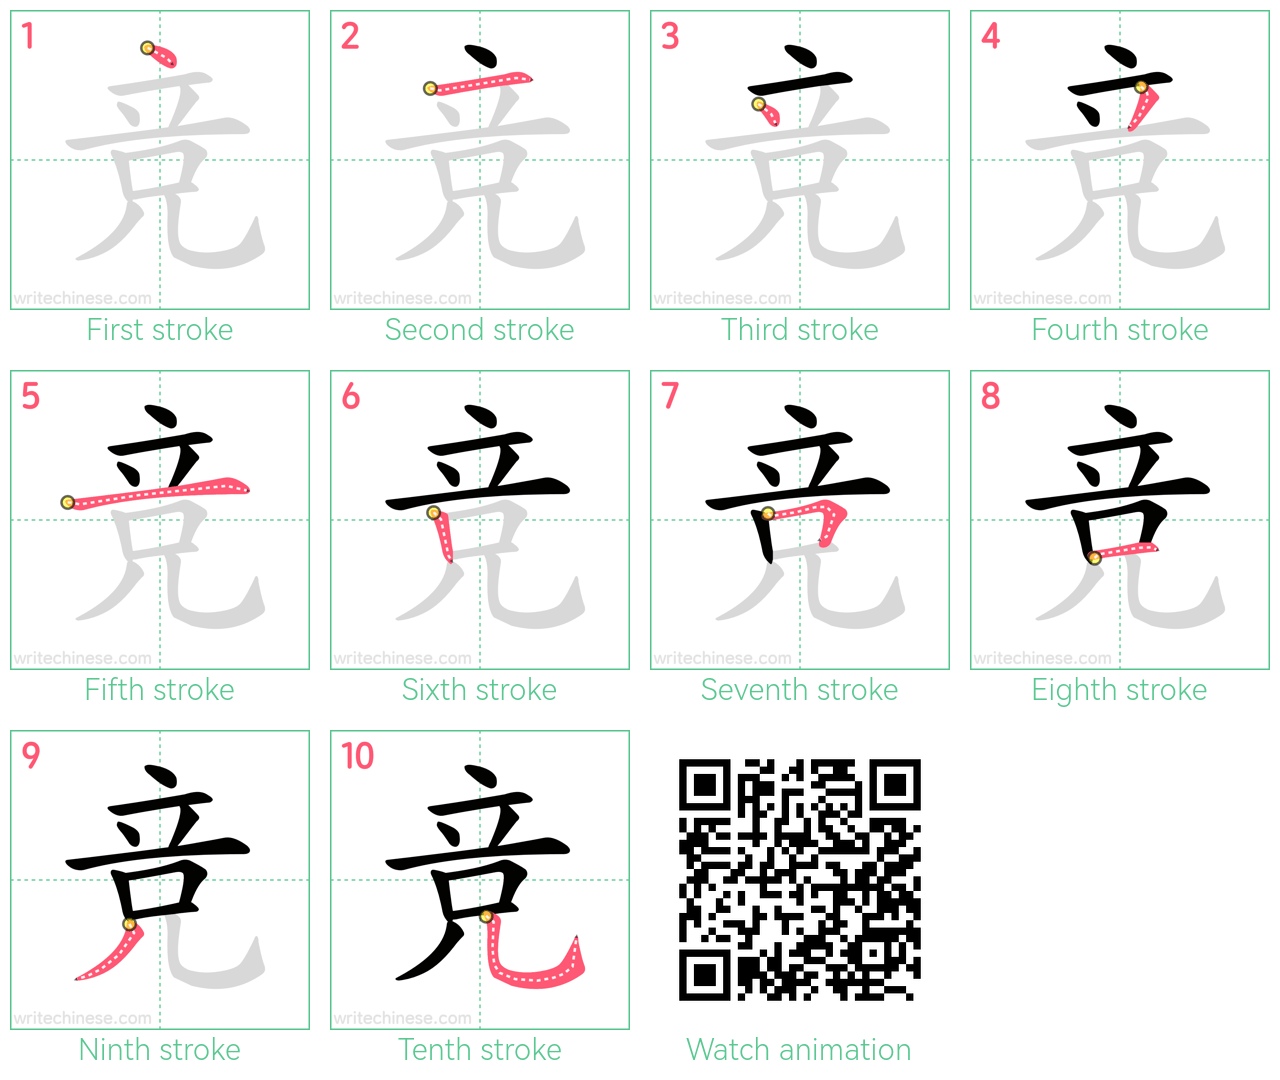 竞 step-by-step stroke order diagrams